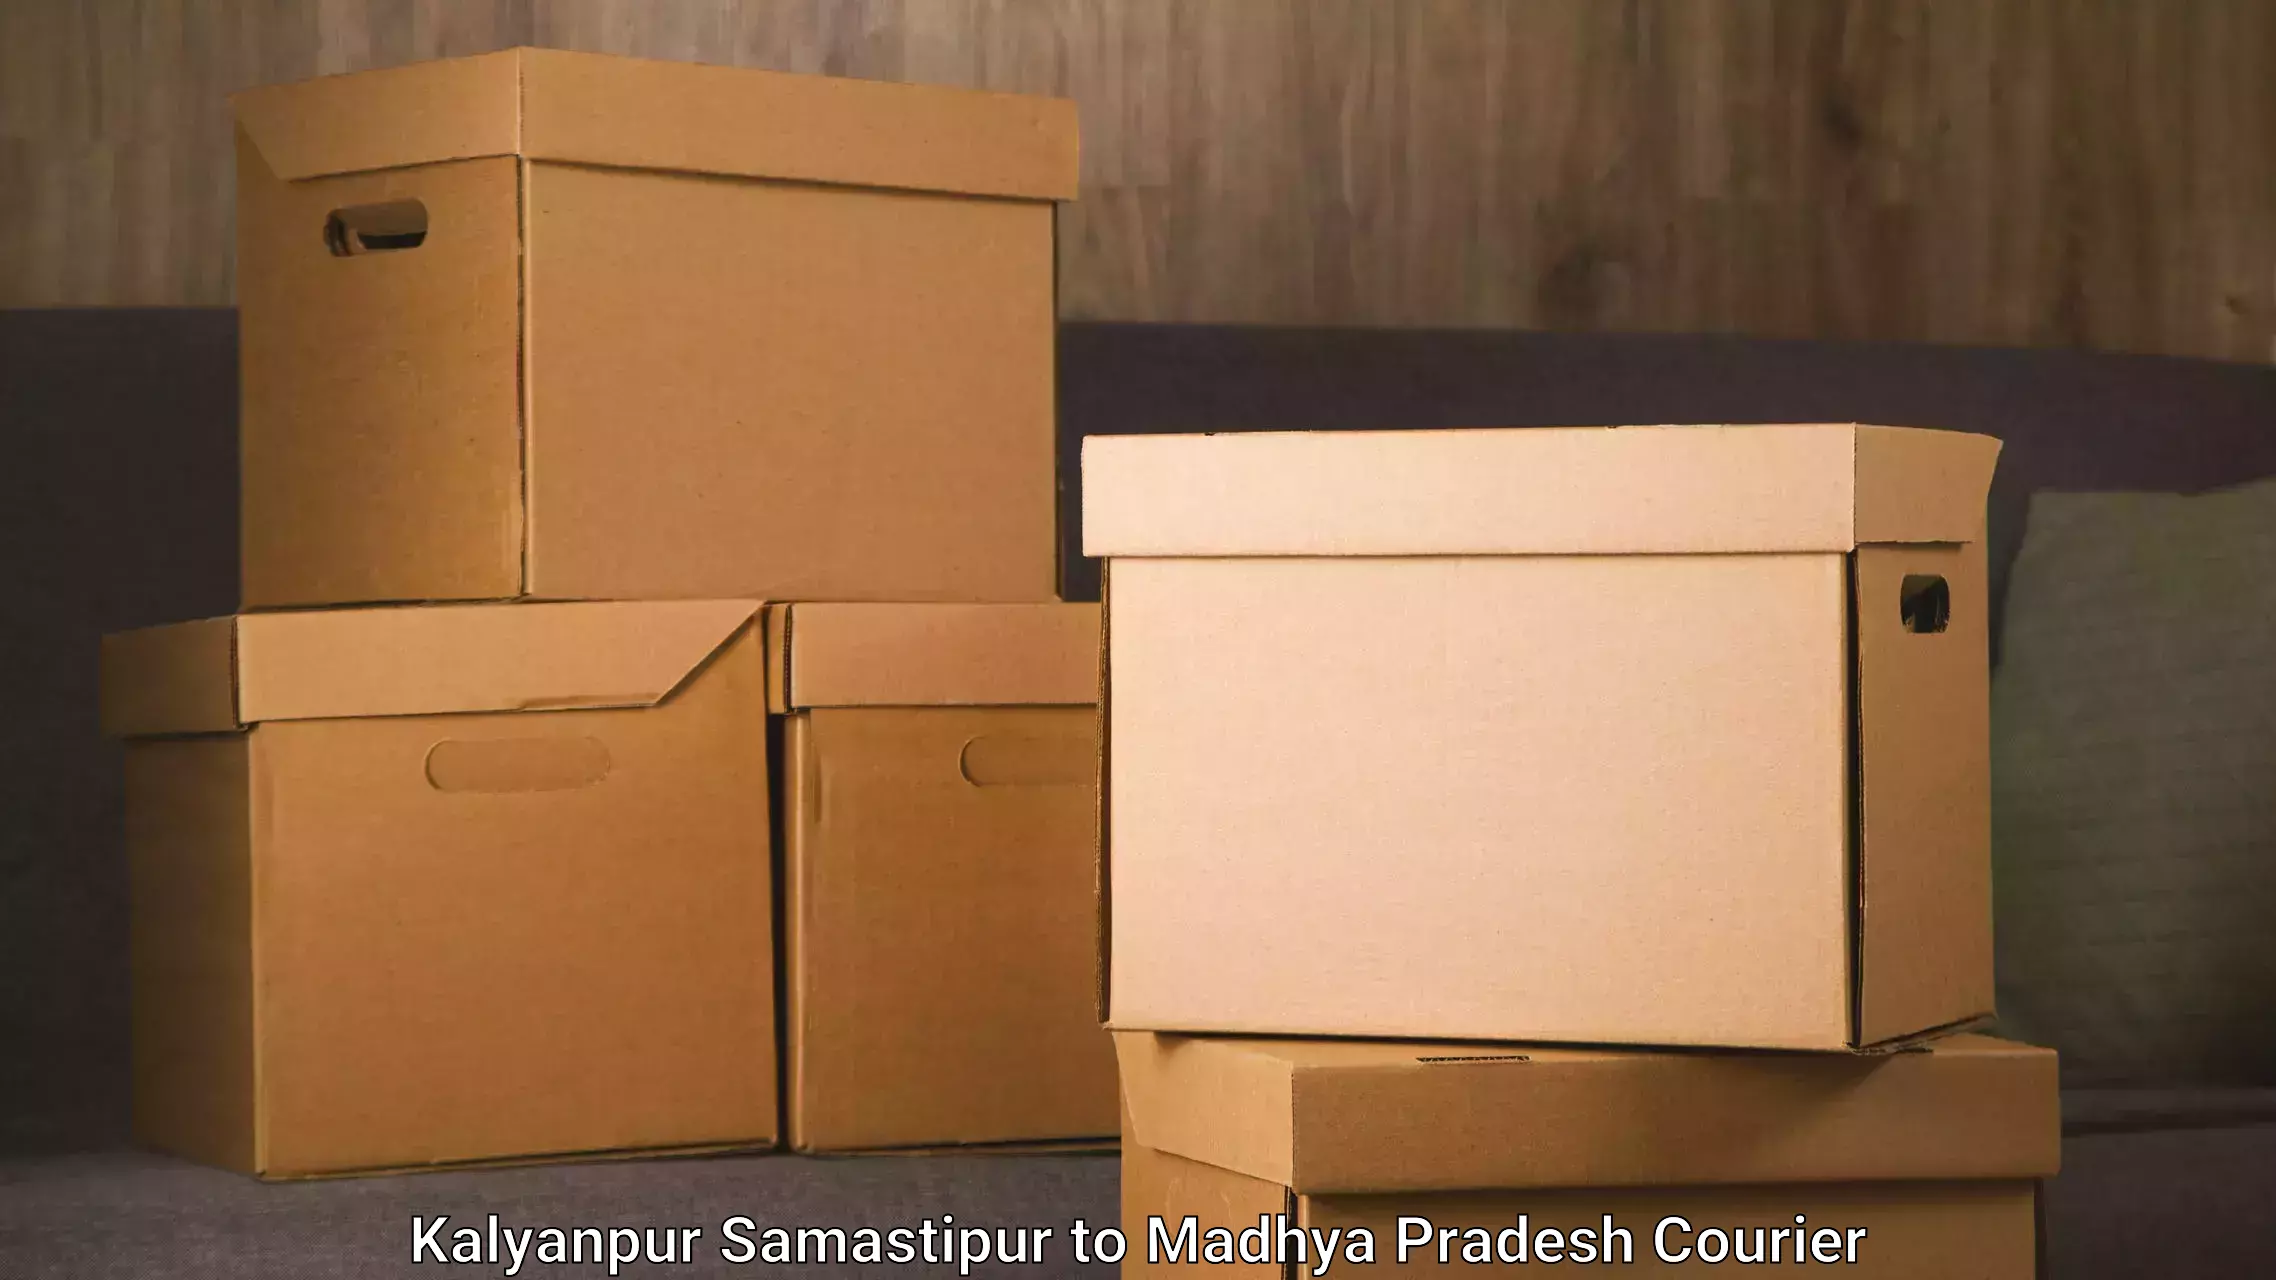 Furniture moving specialists Kalyanpur Samastipur to Mundi